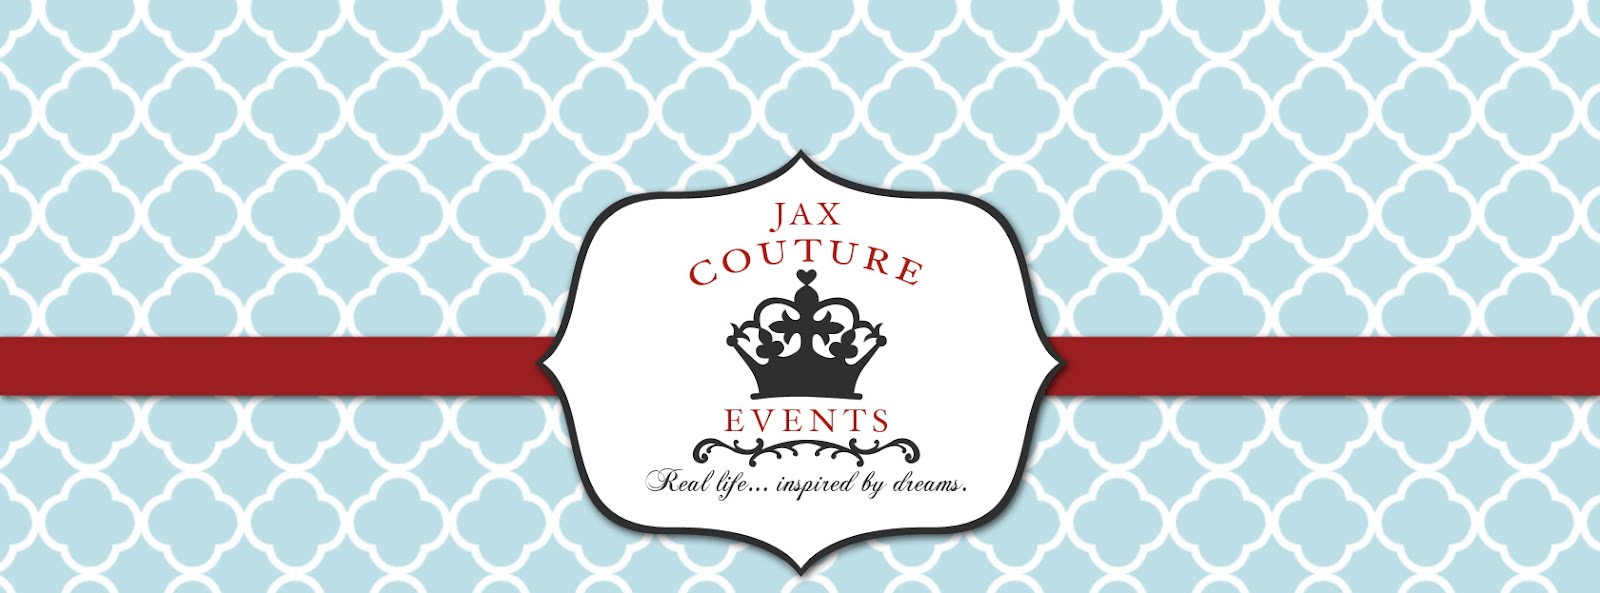 Jax Couture Events & Boutique